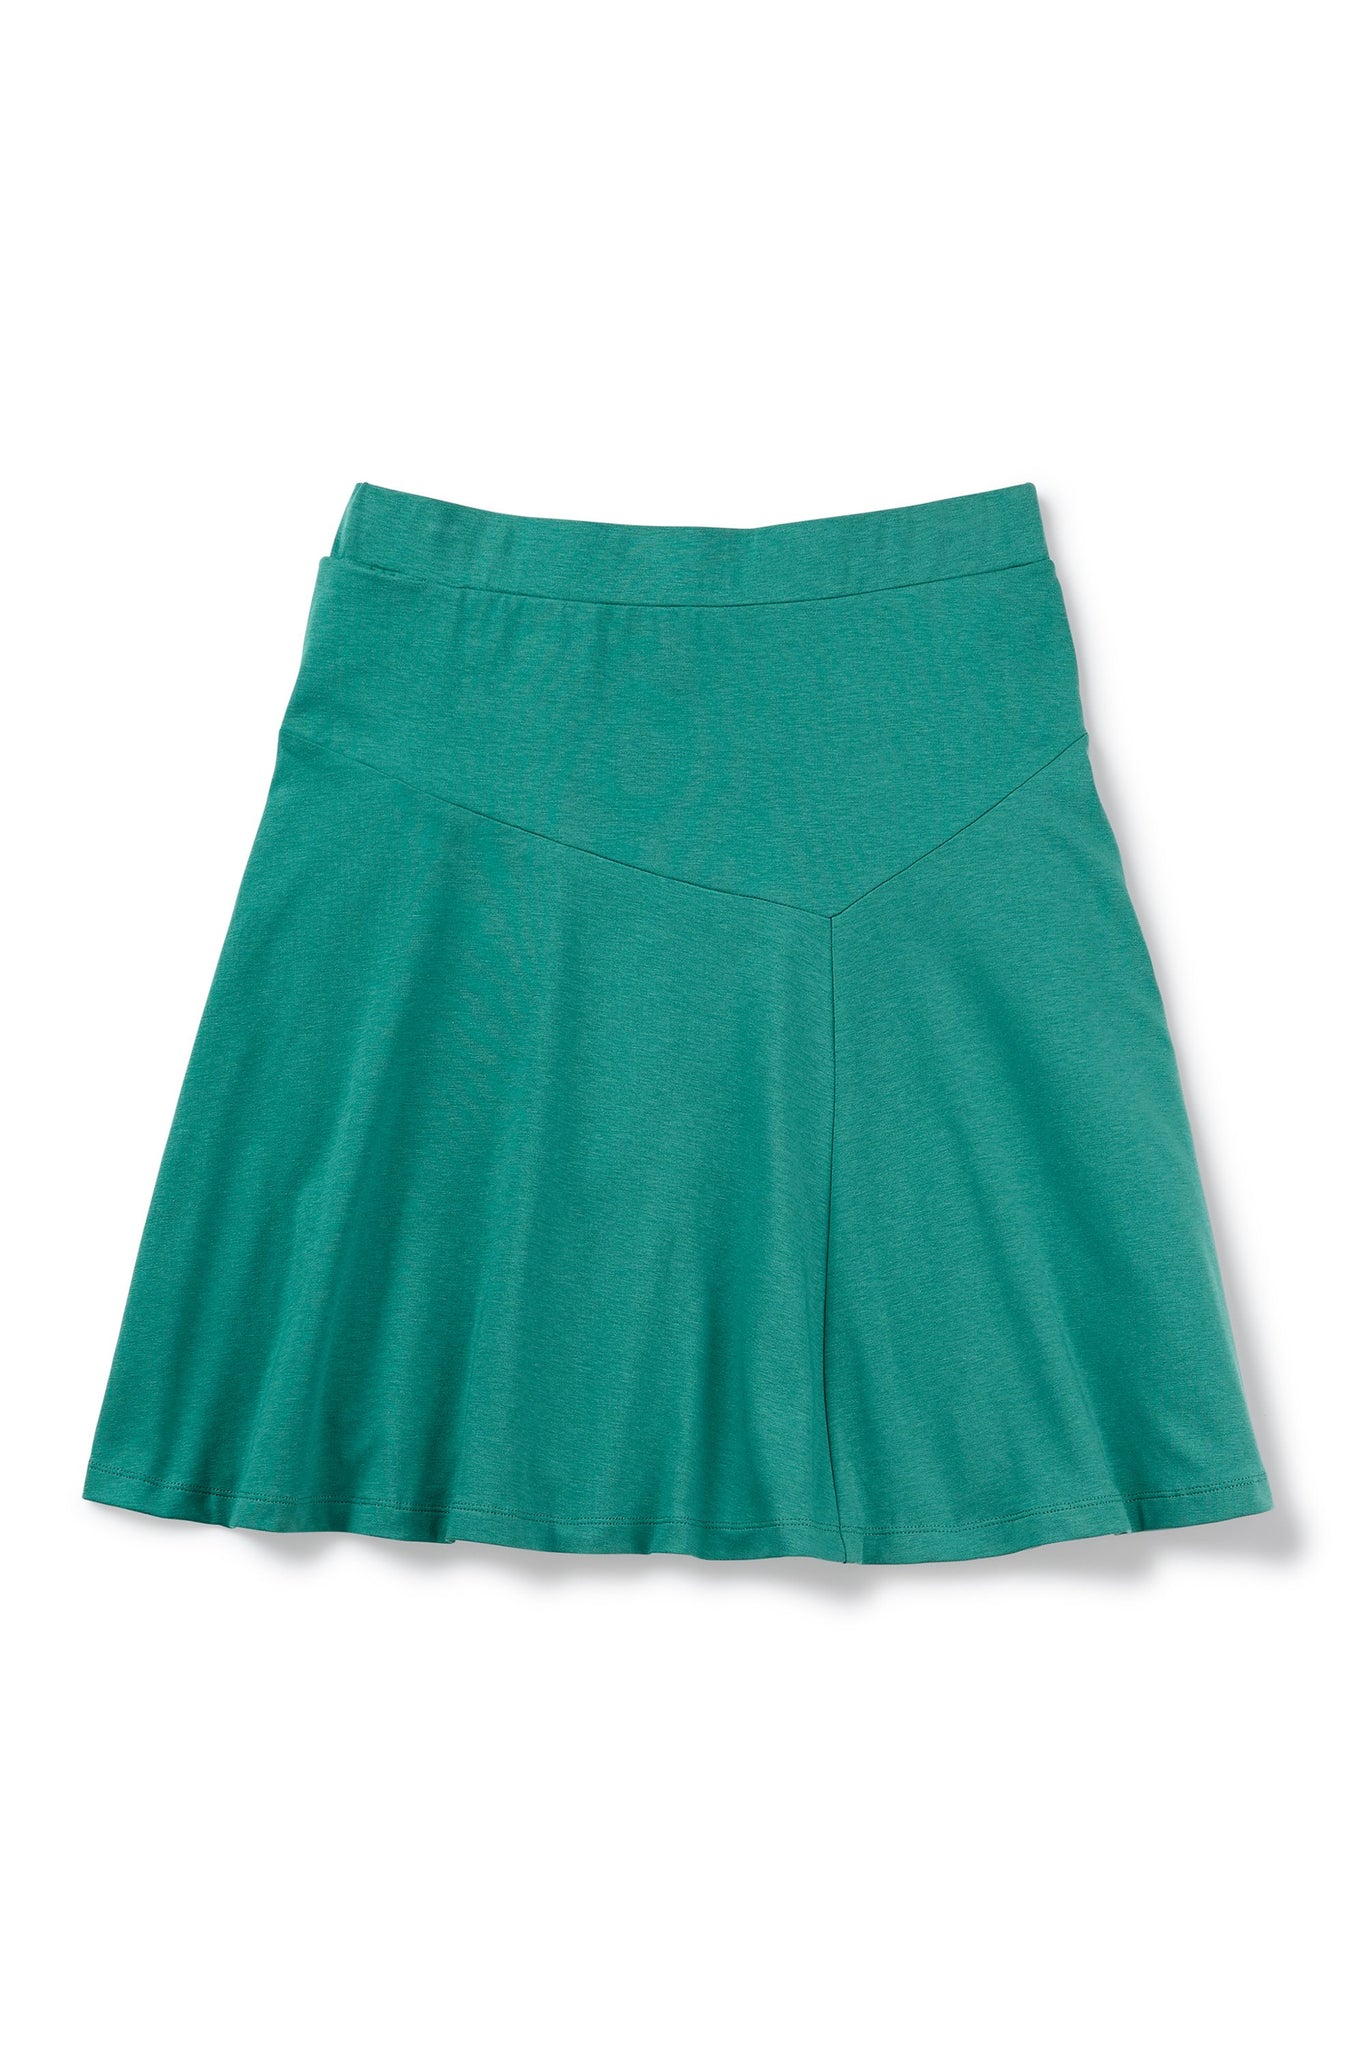 astir swing knit a-line skirt - jade